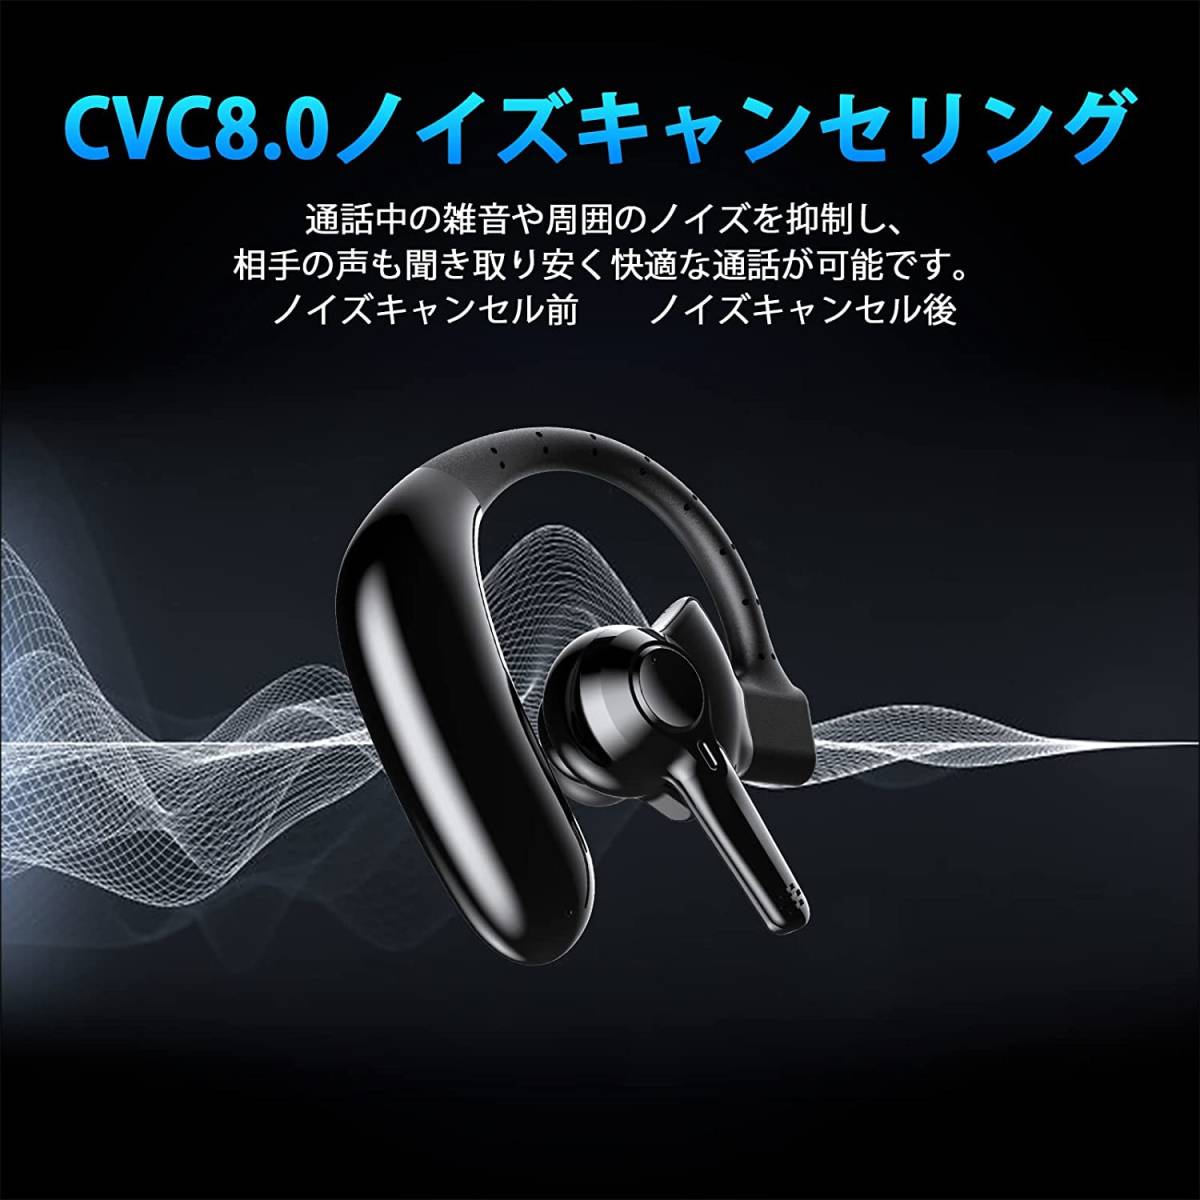 726 Bluetoothヘッドセット ワイヤレスイヤホン Bluetoothイヤホン ブルートゥースイヤホン ビジネスヘッドセット 耳掛け型の画像6